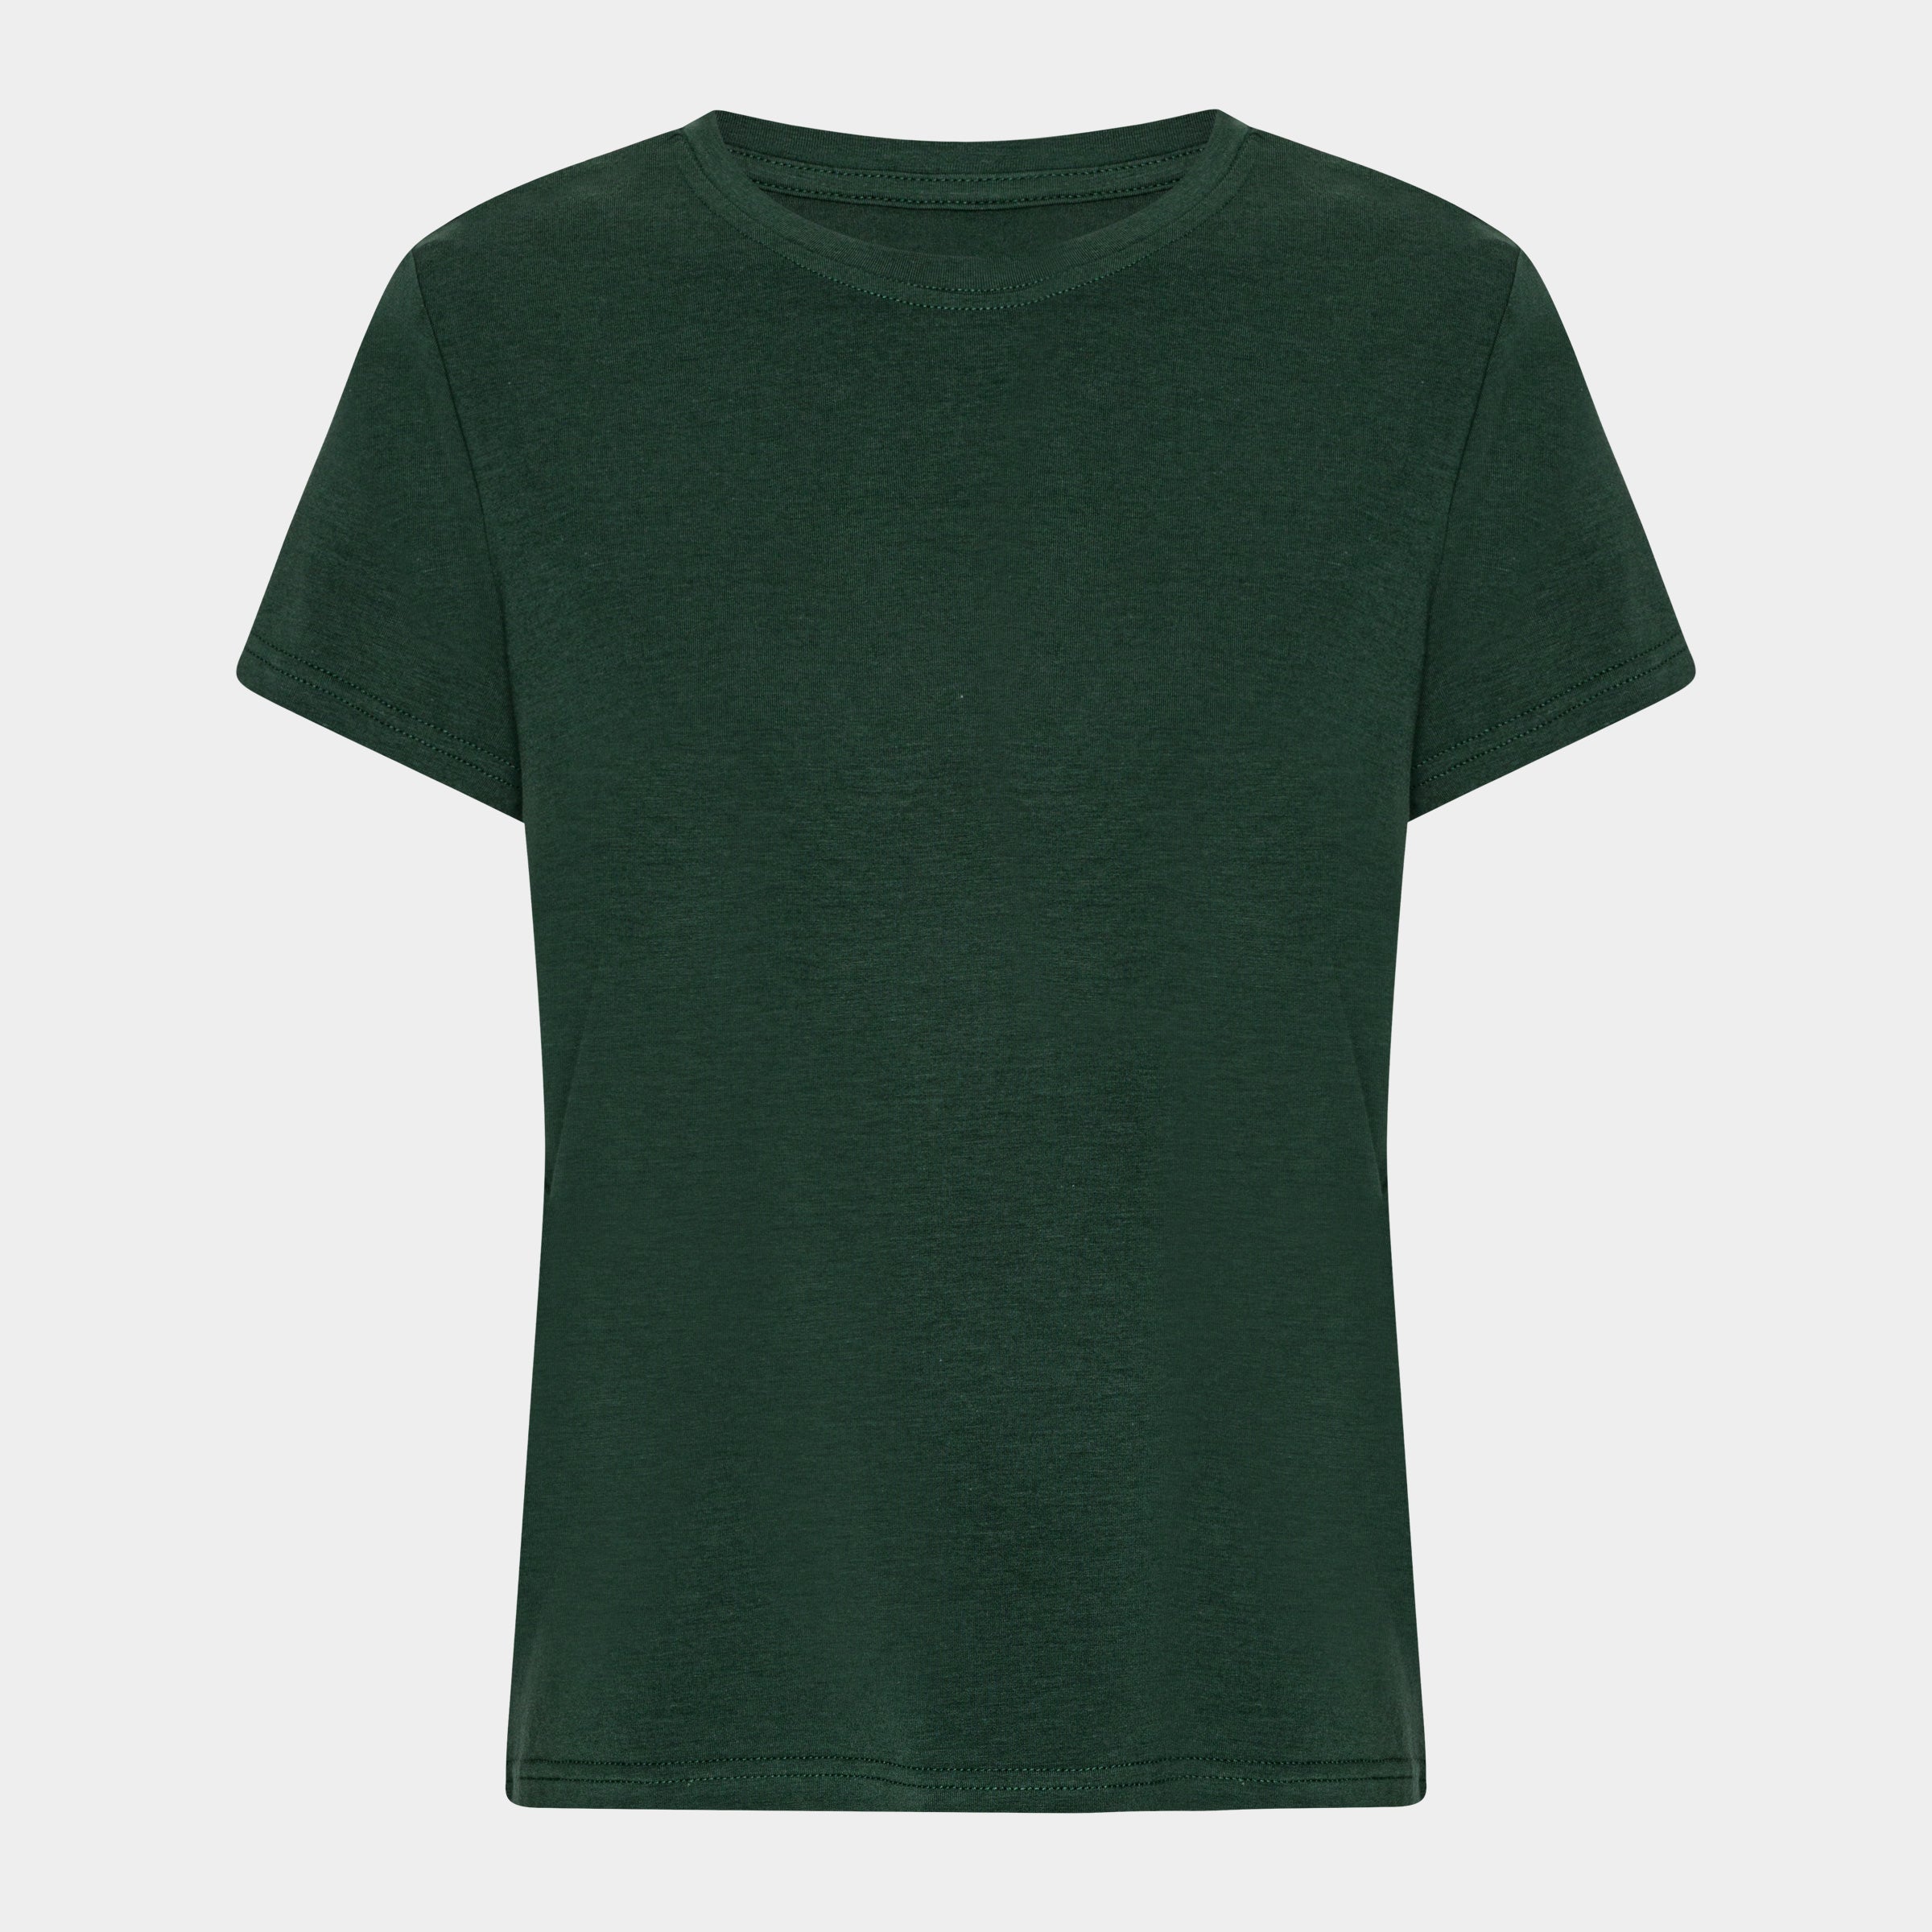 Billede af Mørkegrøn kortærmet bambus T-shirt til dame fra Copenhagen Bamboo, XXL hos Bambustøj.dk